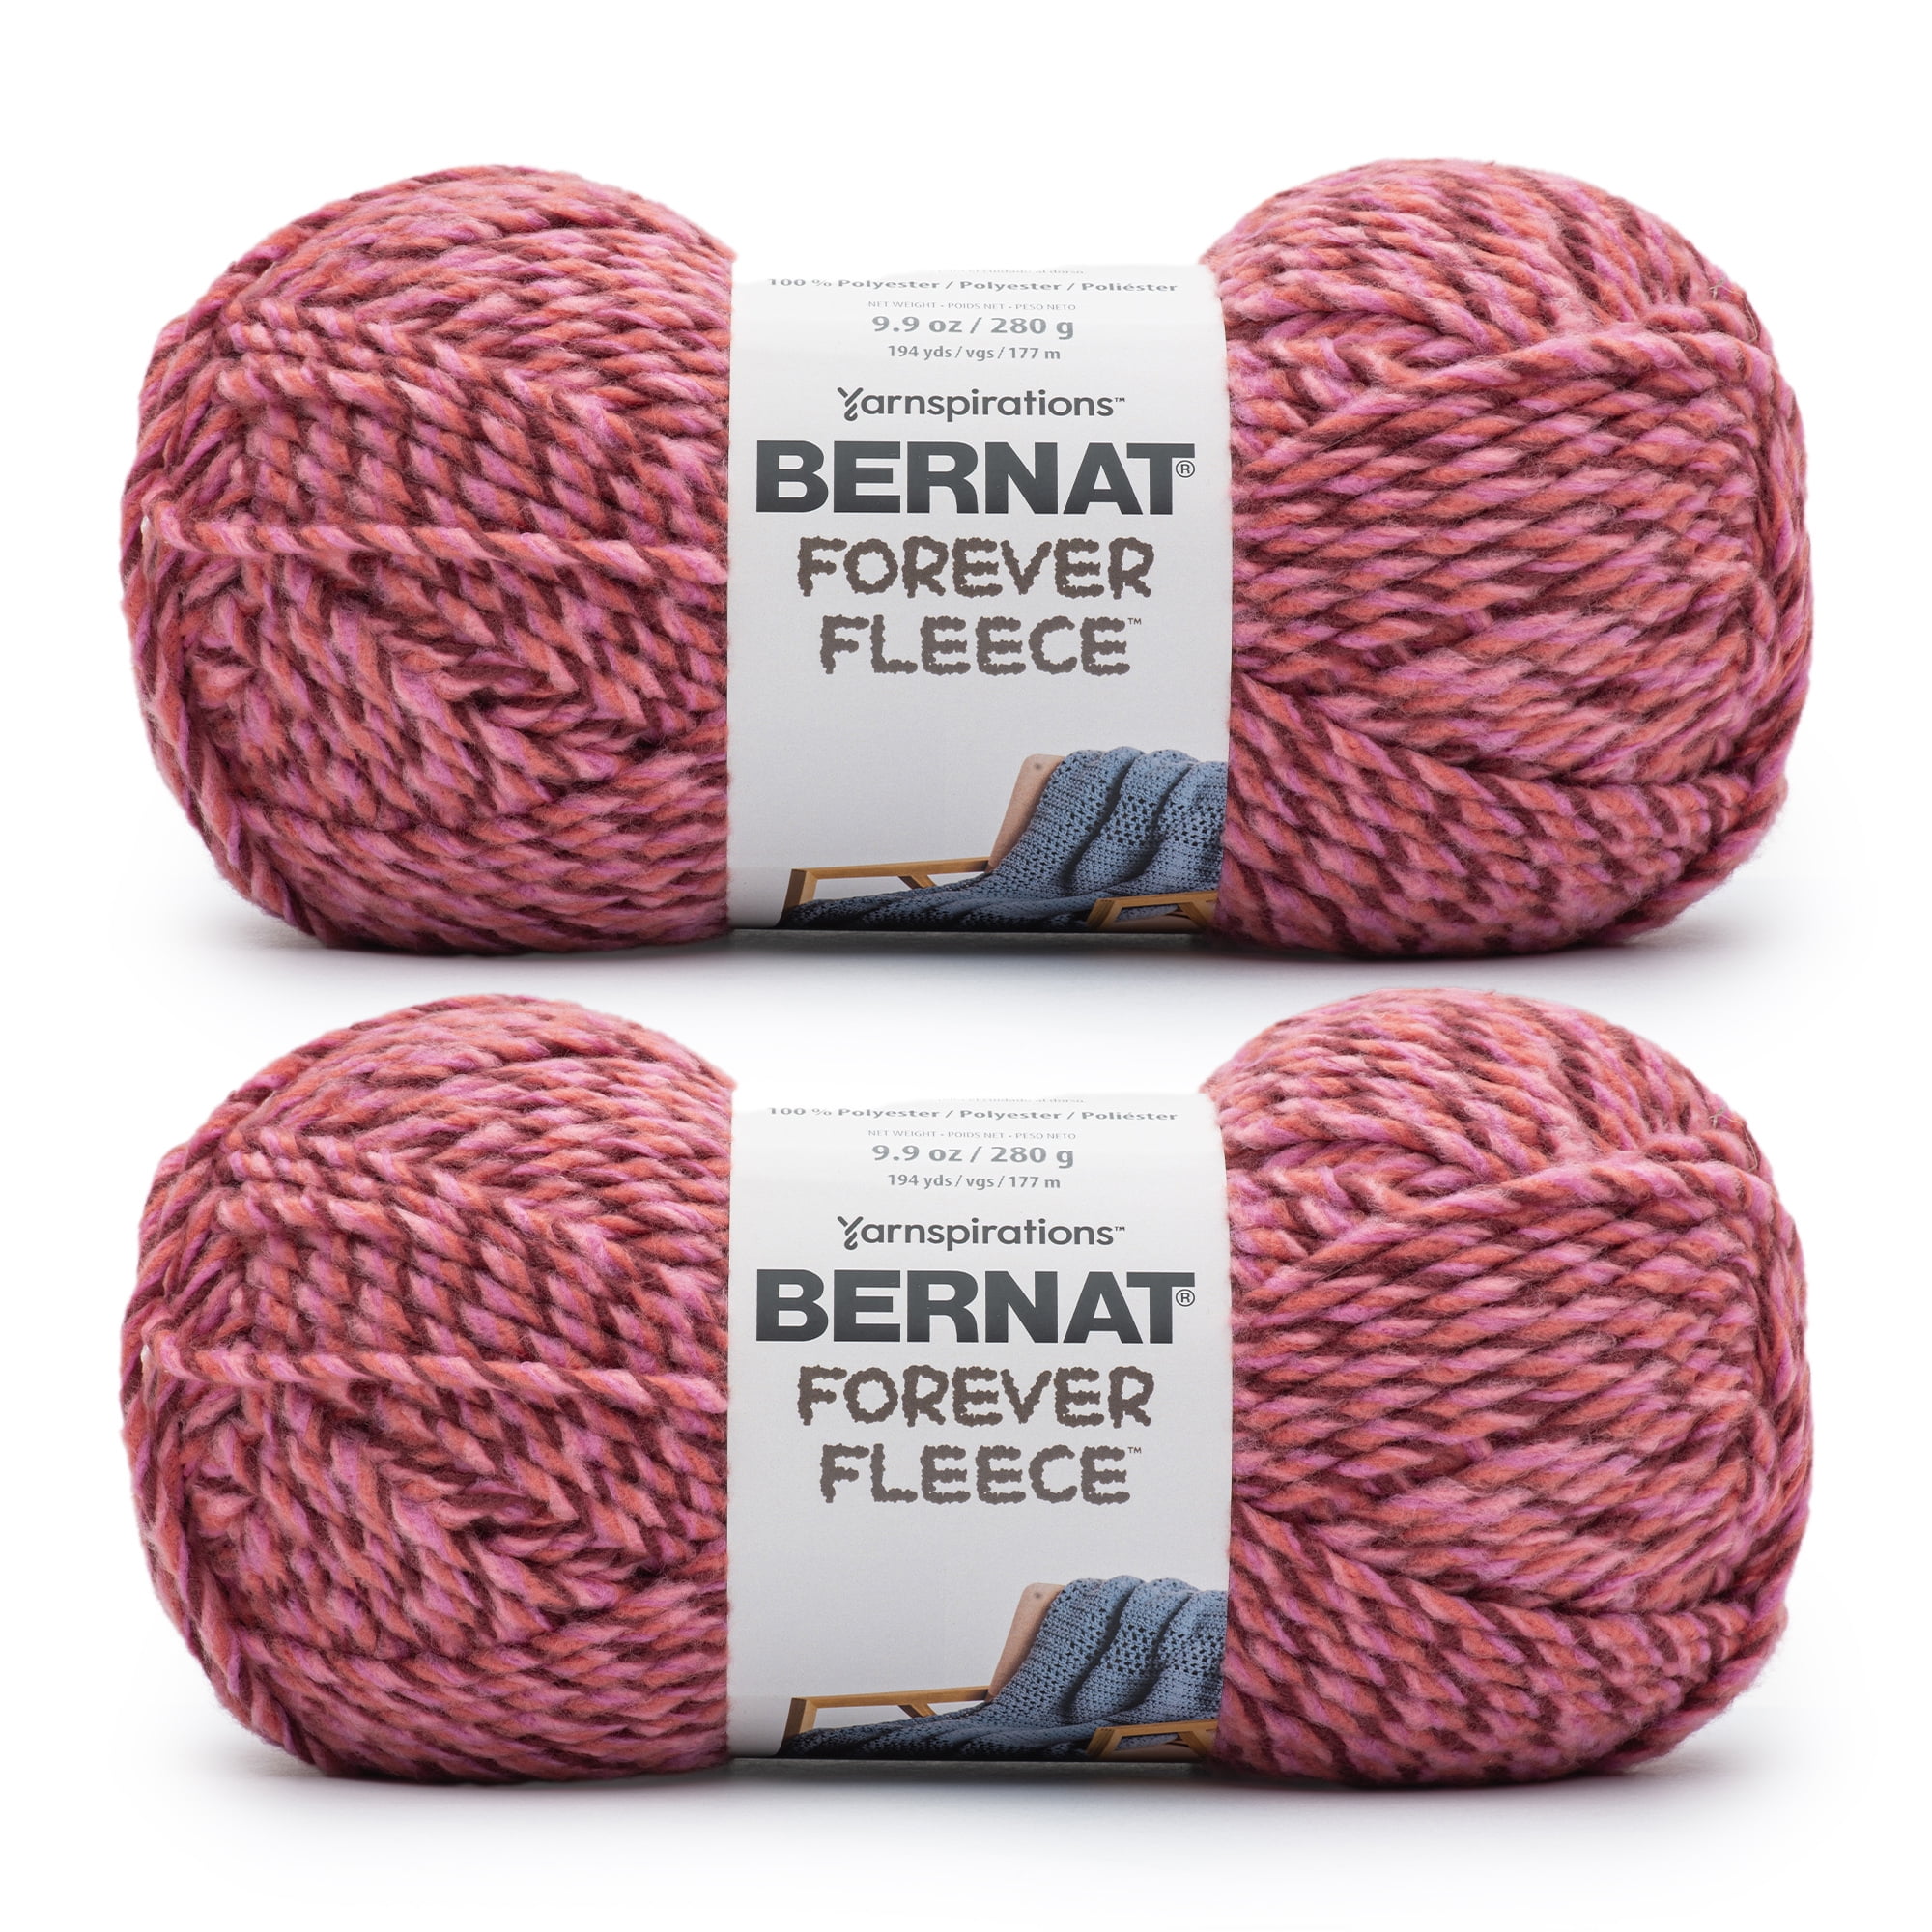 Bernat Forever Fleece Yarn - NOTM652855